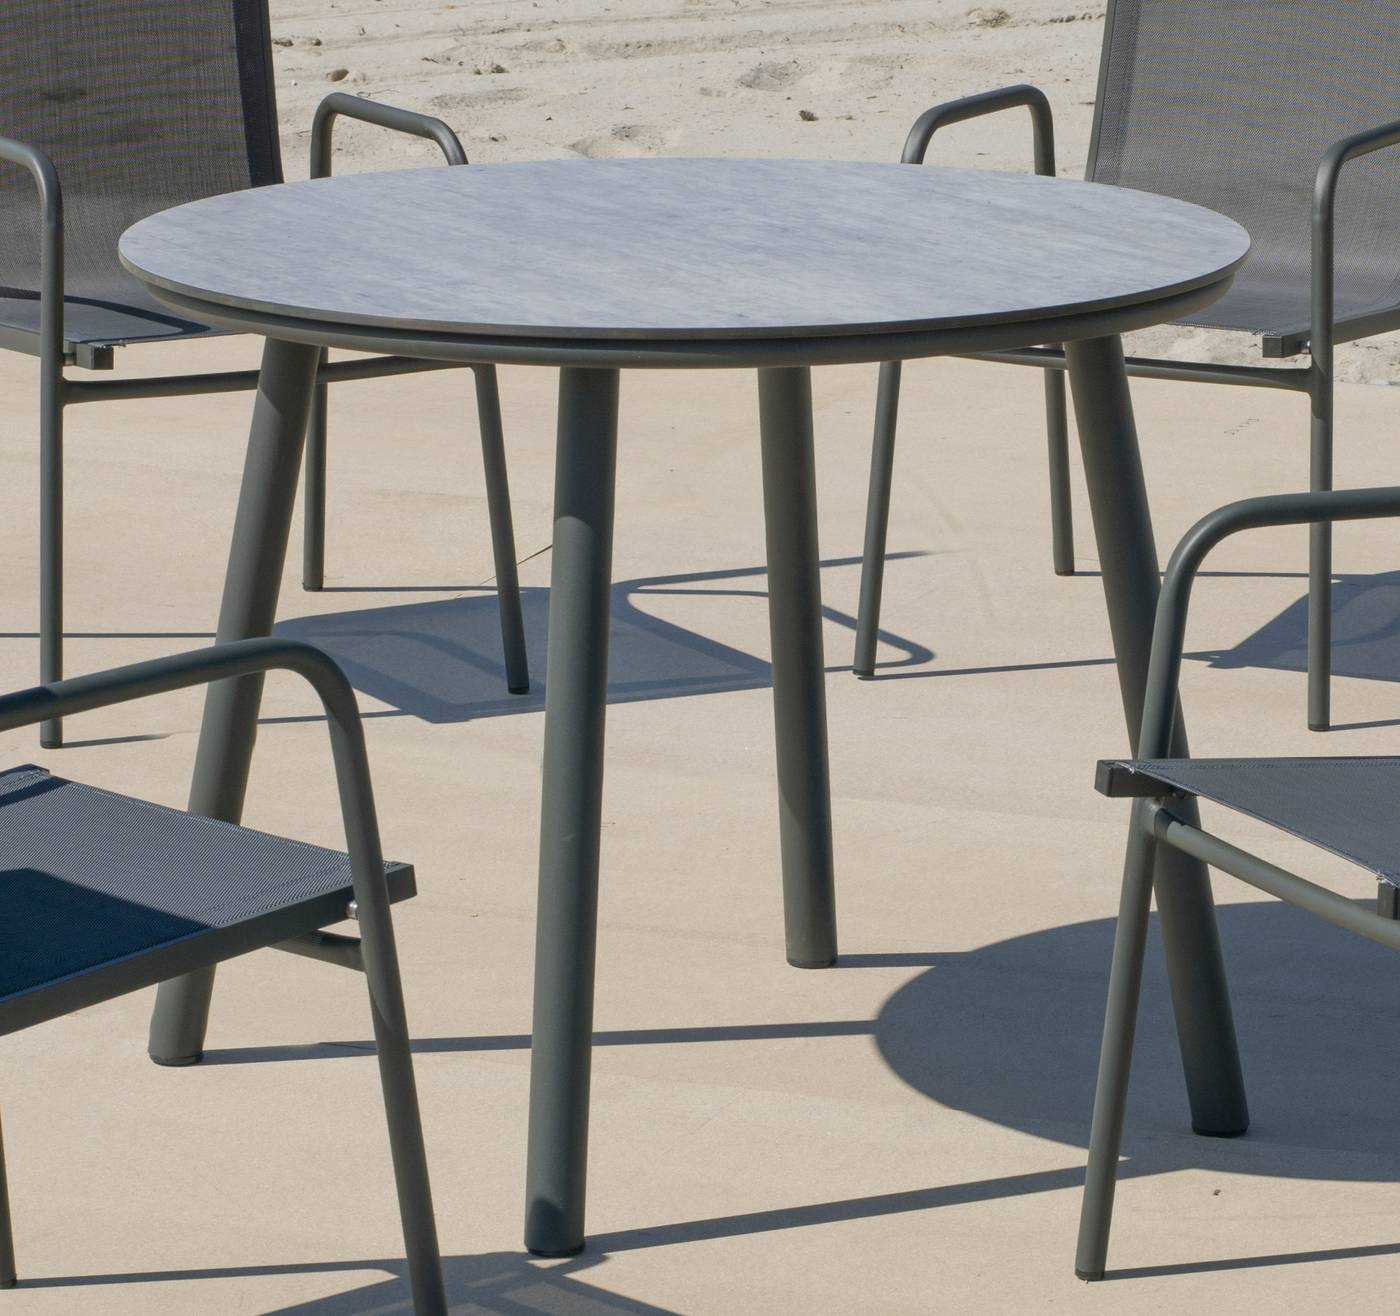 Mesa redonda de aluminio, con pata circular y tablero HPL de 100 cm. Disponible en color blanco y antracita.